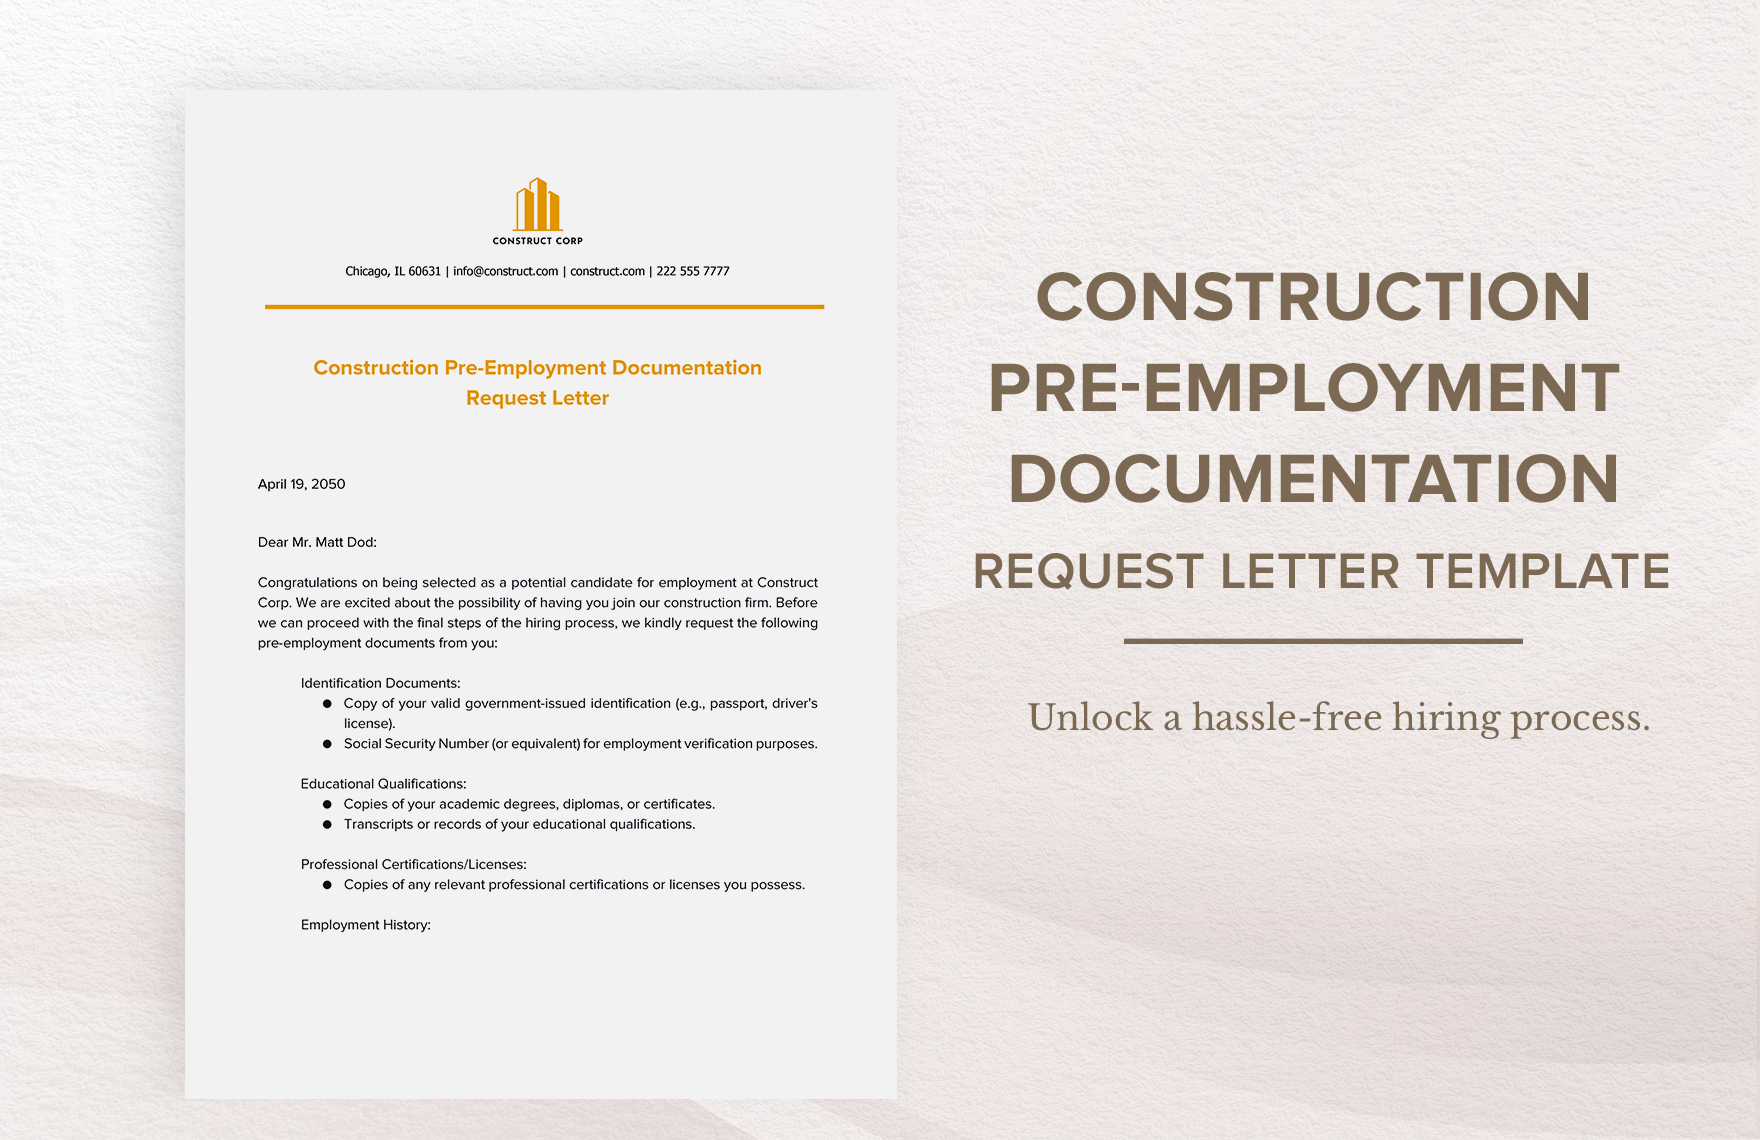 Construction Pre-Employment Documentation Request Letter Template